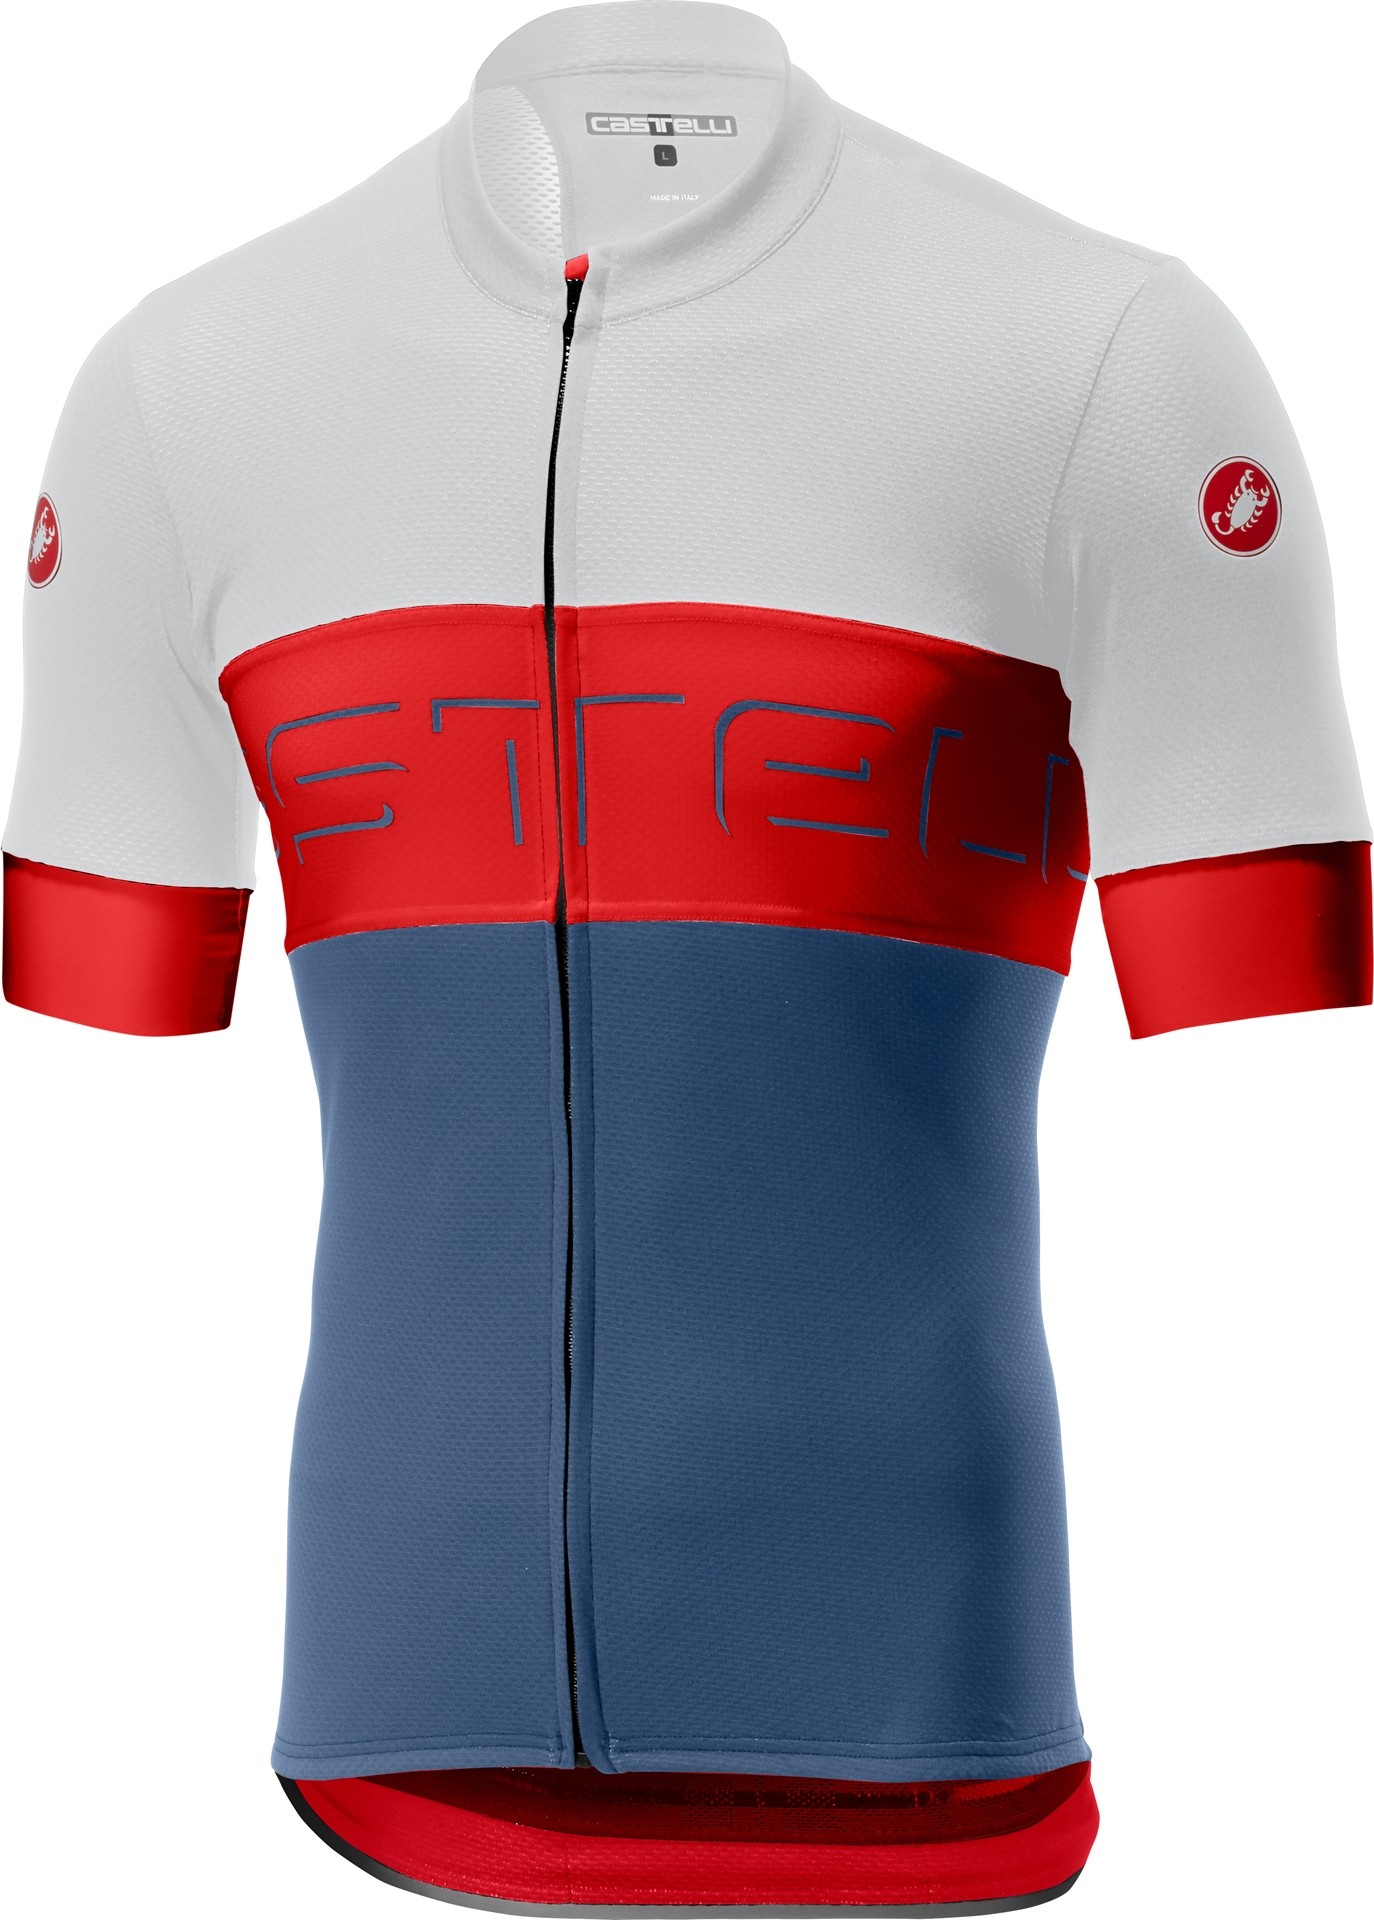 Castelli prologo VI maillot de cyclisme manches courtes ivory rouge steel bleu clair